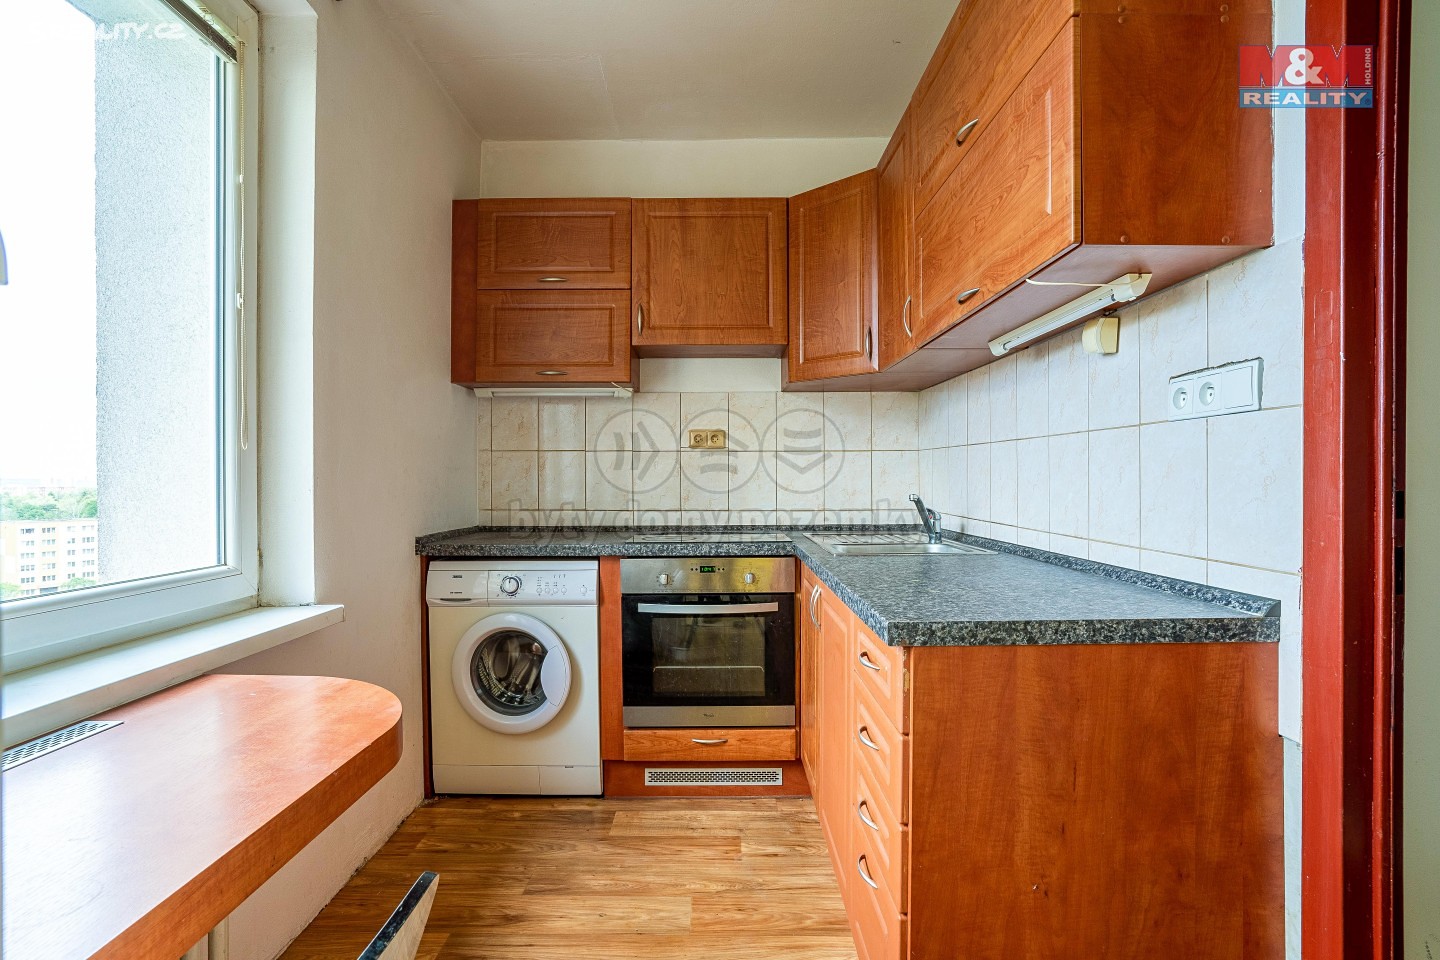 Prodej bytu 1+1 28 m², Horní, Ostrava - Ostrava-Jih